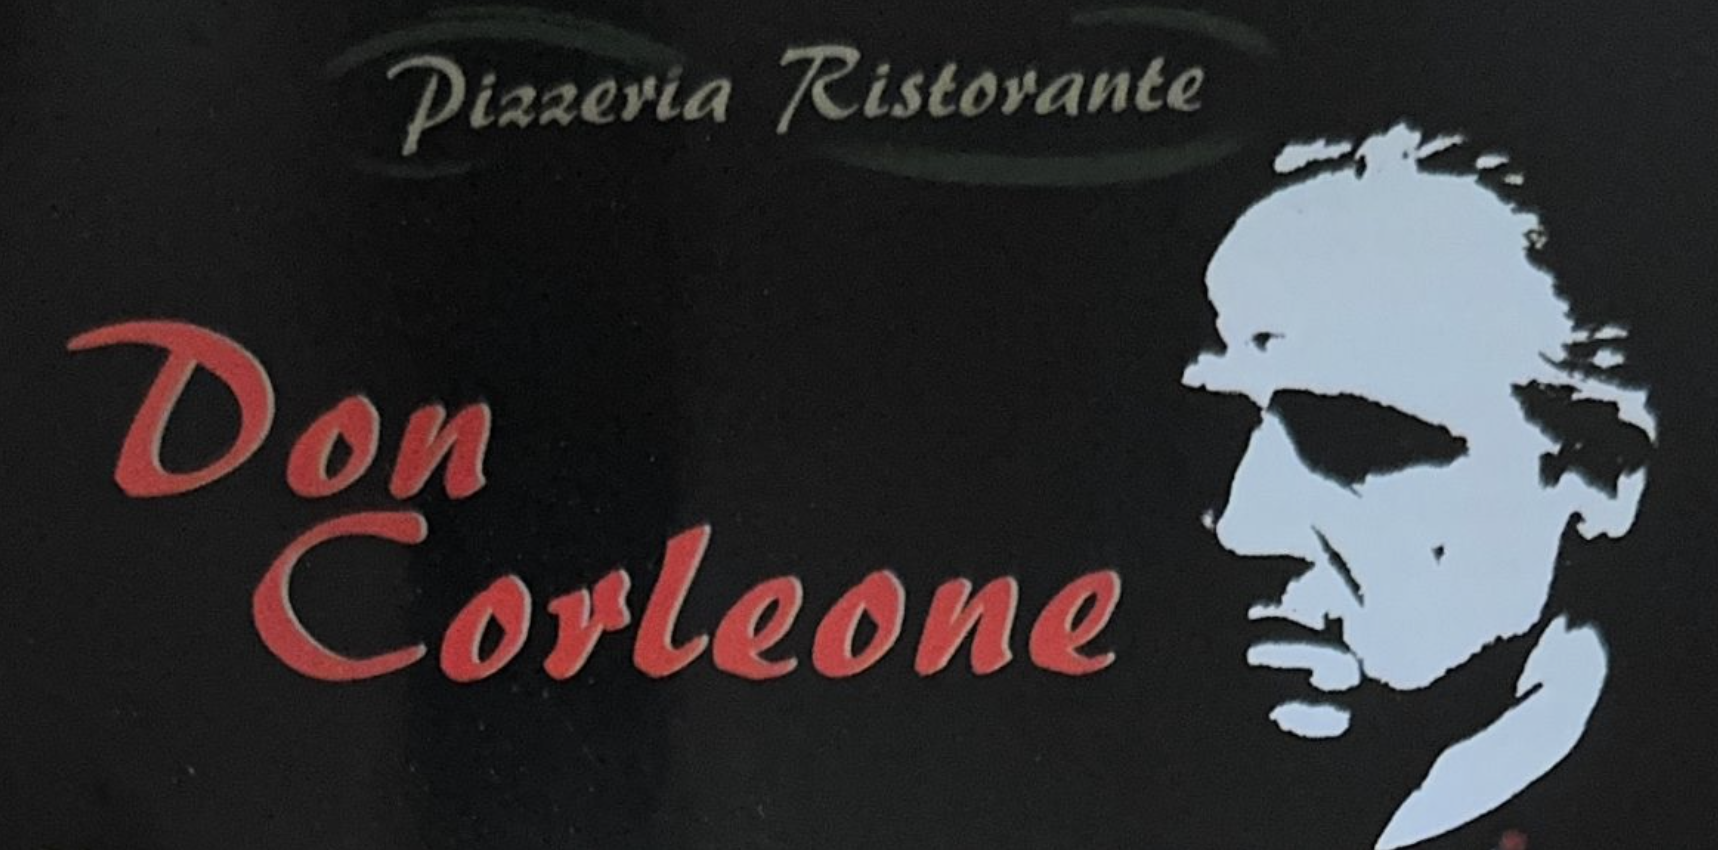 Pizzeria Don Corleone Wien